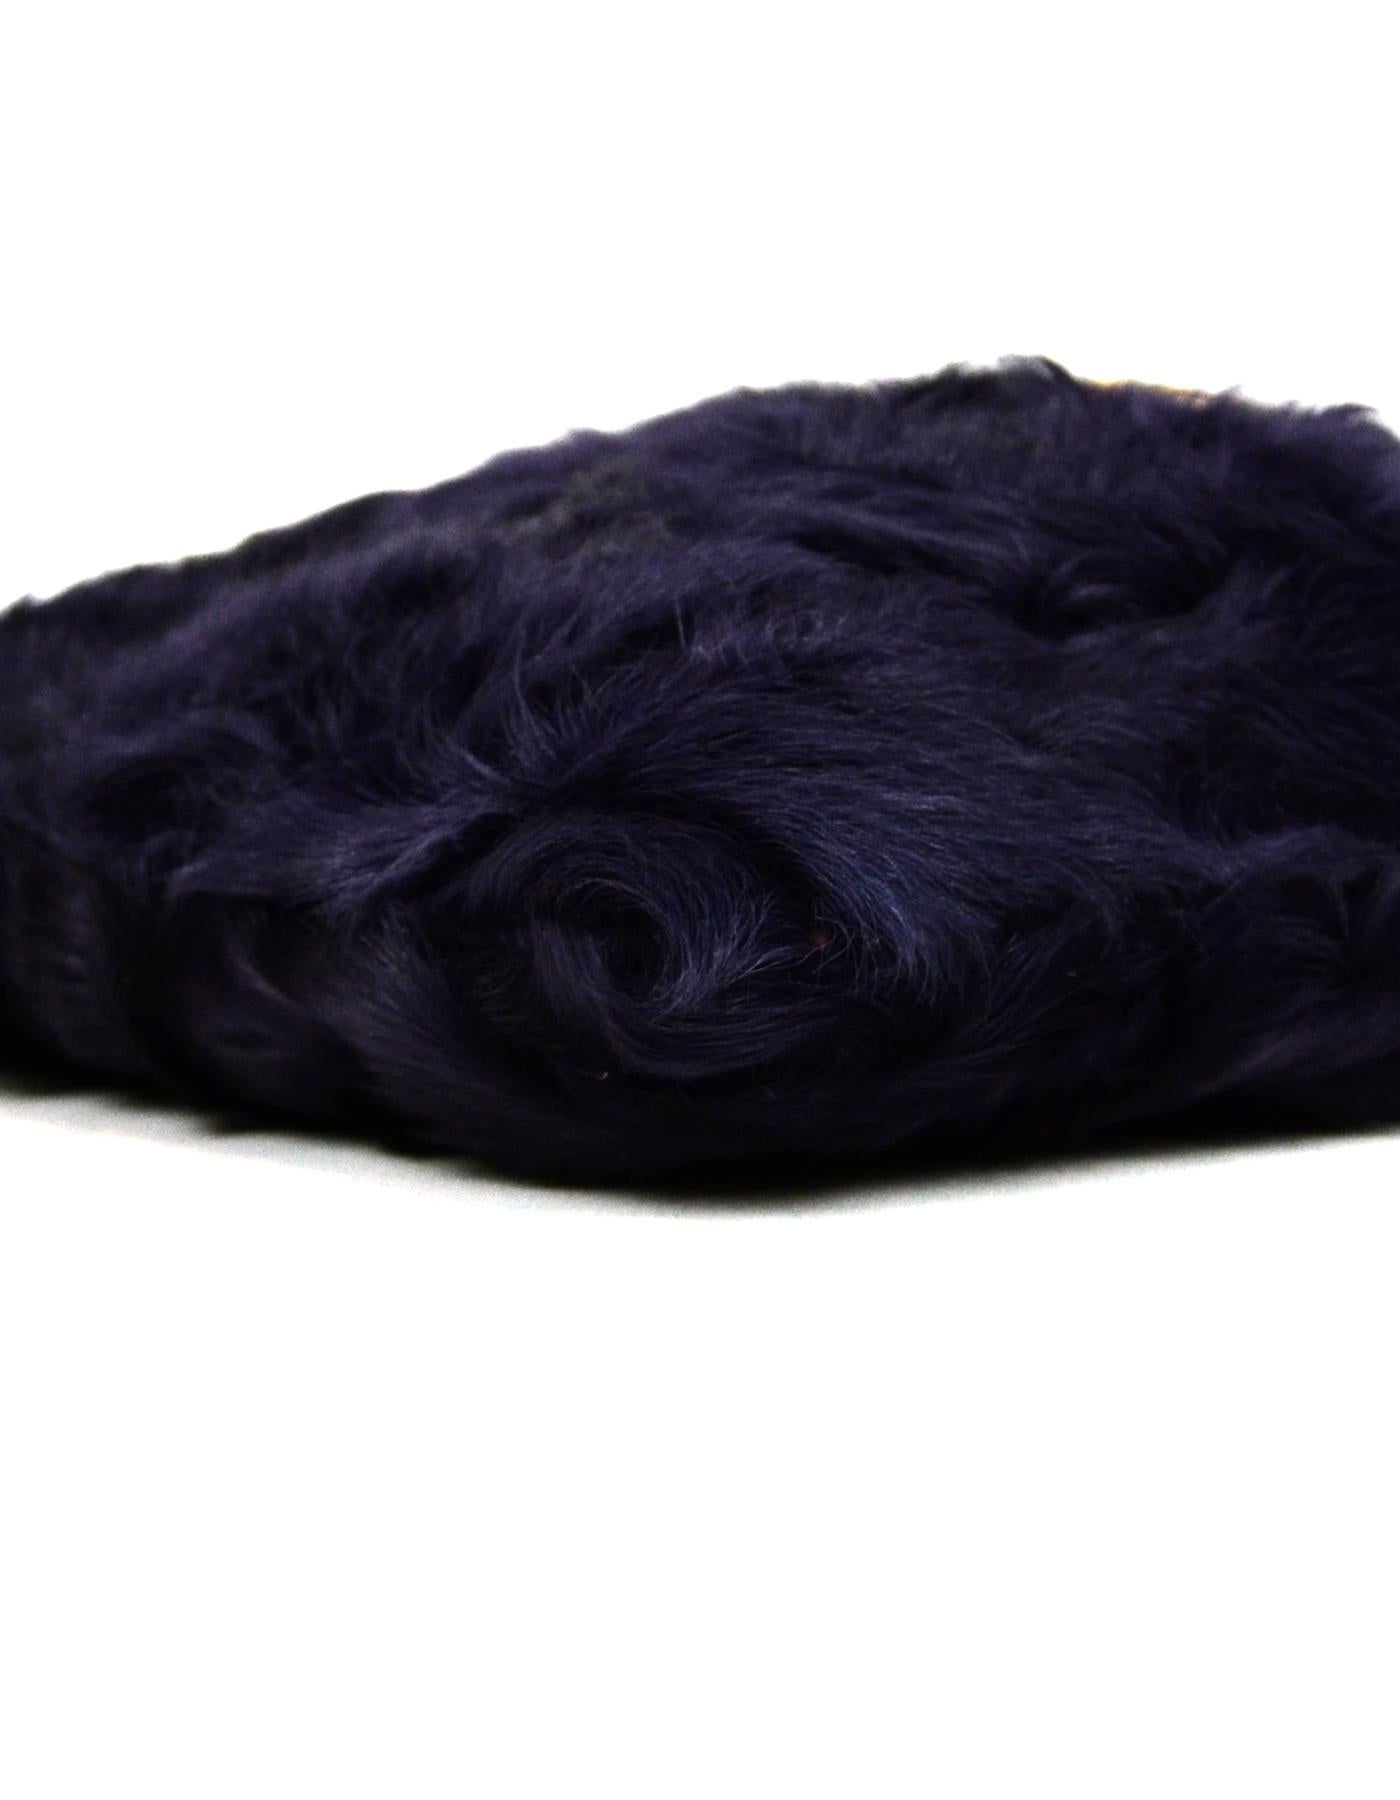 Dolce & Gabbana Purple Fur Bag with Chain Strap  1